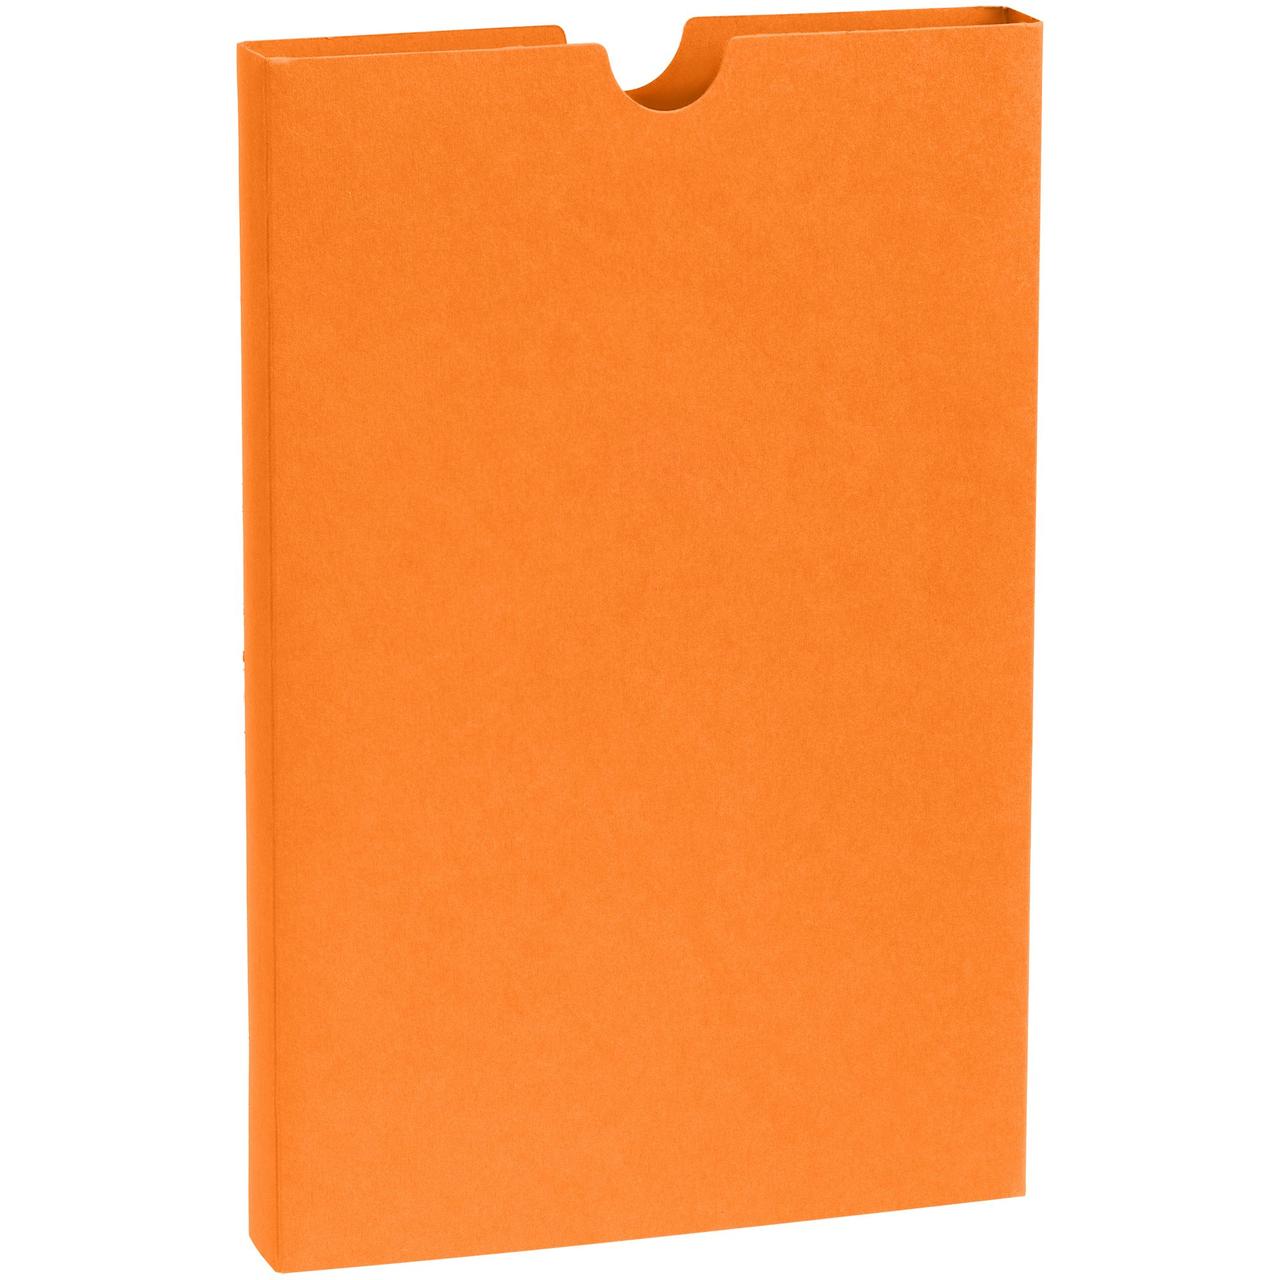 Шубер Flacky, оранжевый (артикул 12210.20)